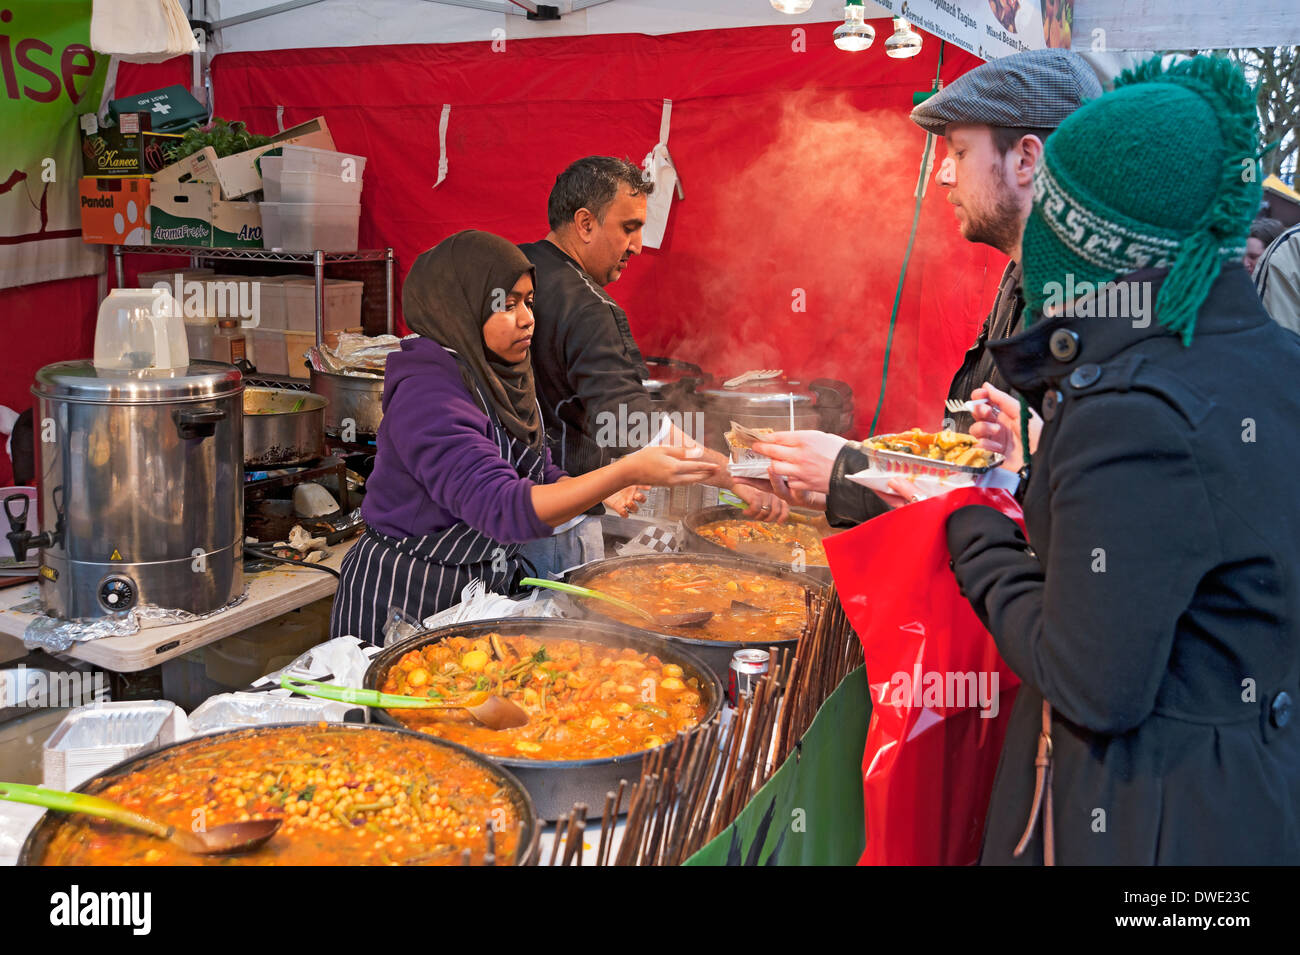 Jeune femme servant de la nourriture de rue marocaine sur le stand du marché York North Yorkshire Angleterre Royaume-Uni GB Grande-Bretagne Banque D'Images